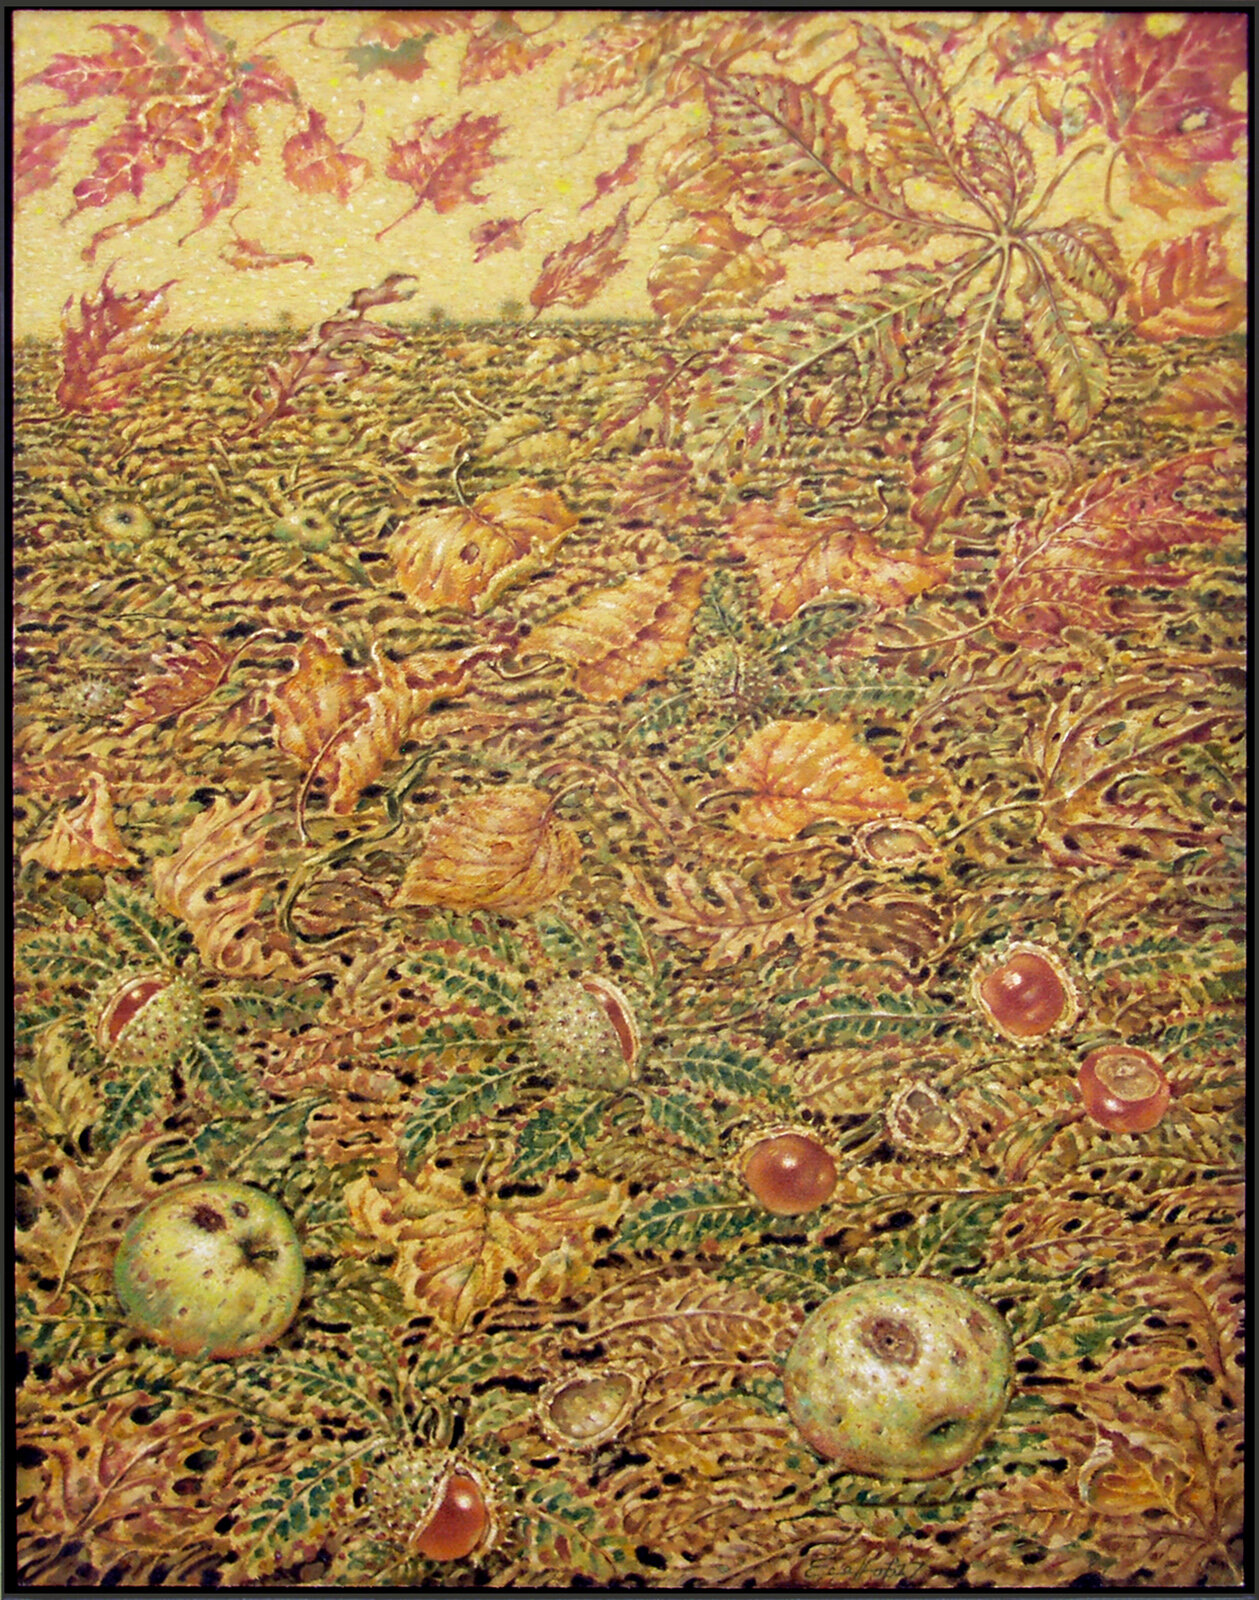 Autumn Leaves; Oil on Plywood; 50/64